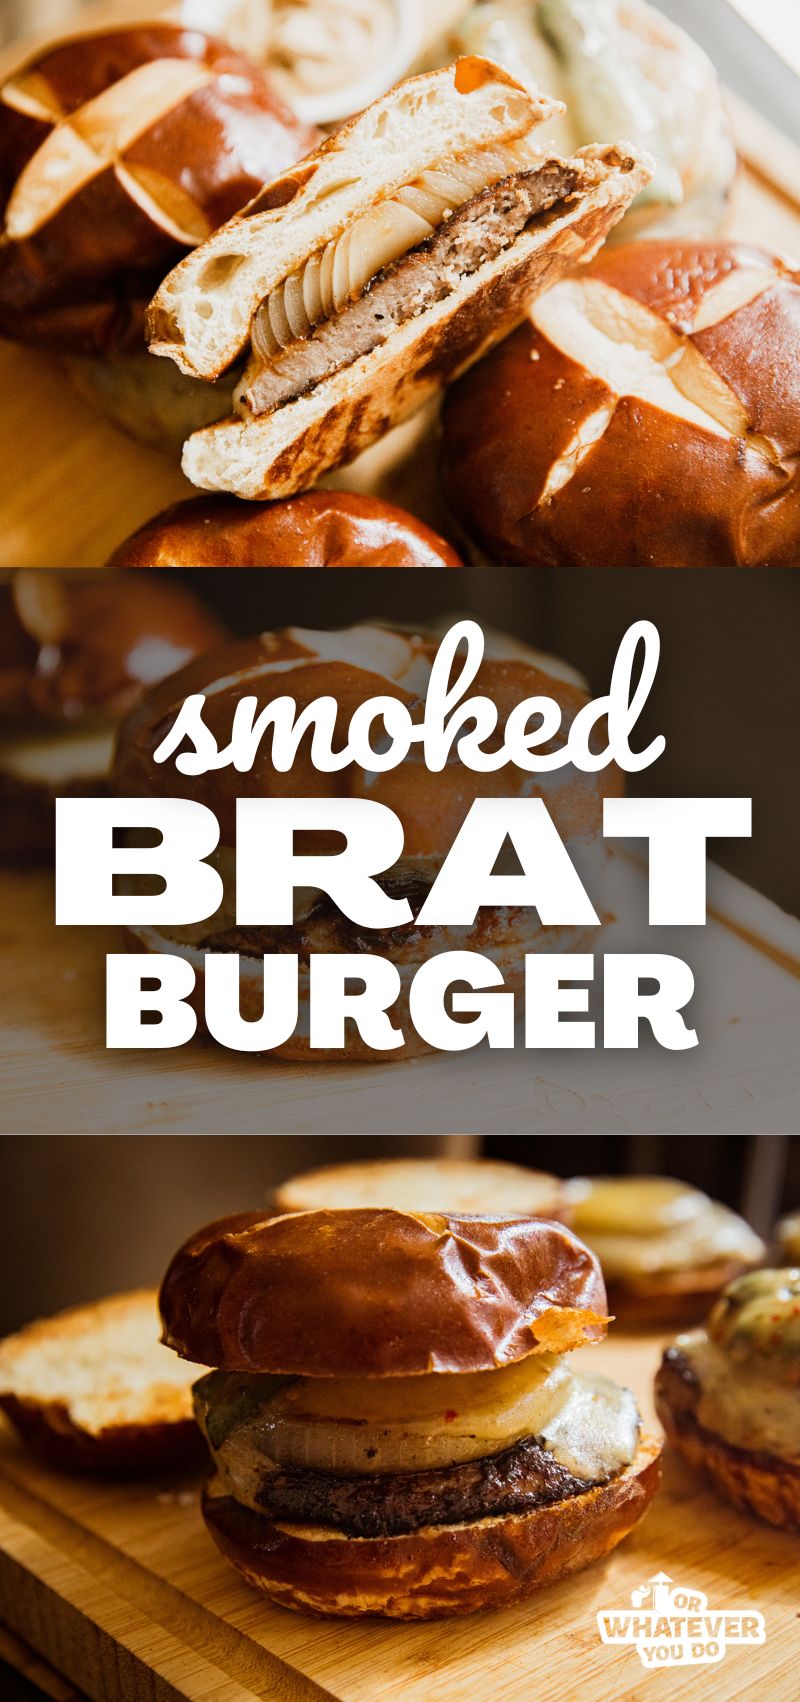 Smoked Brat Burger